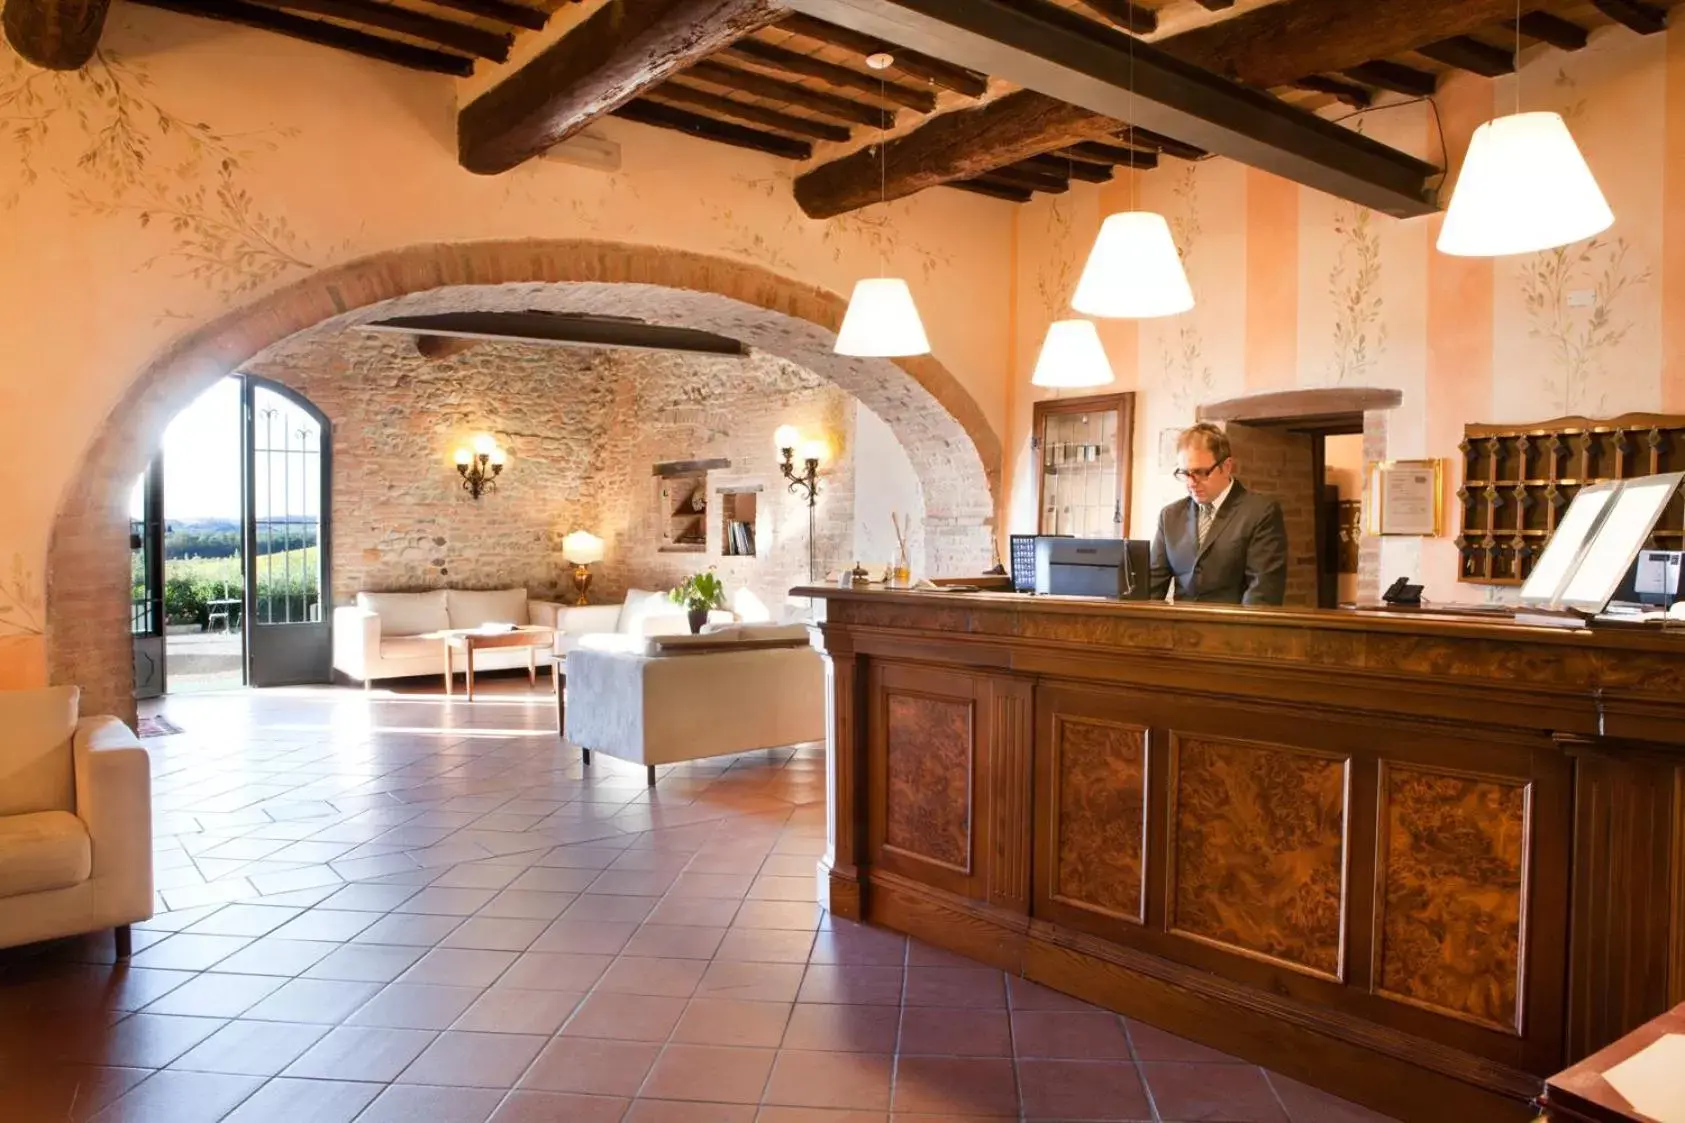 Lobby or reception, Lobby/Reception in Villa Curina Resort